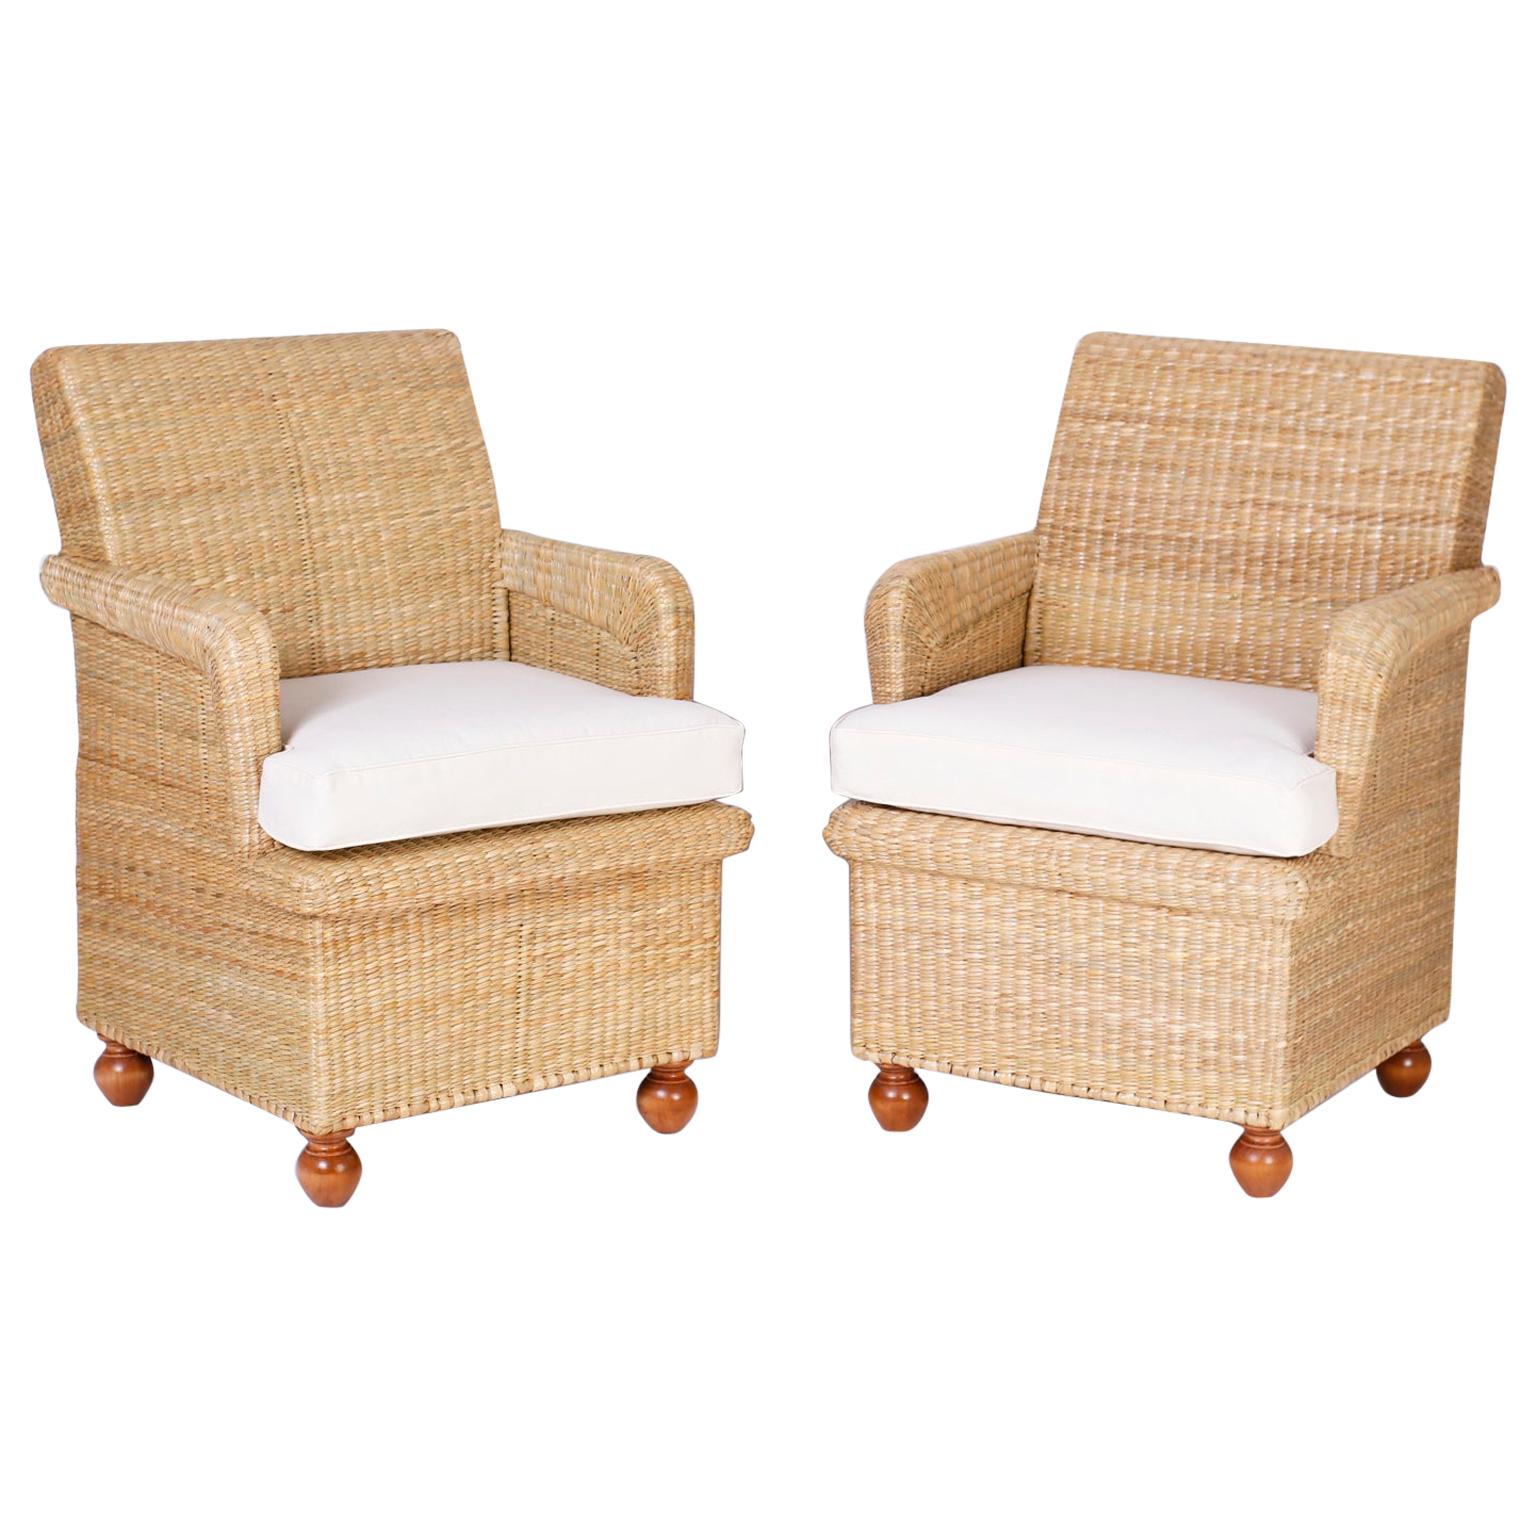 Sessel aus Korbweide aus der FS Flores-Kollektion, einzeln erhältlich